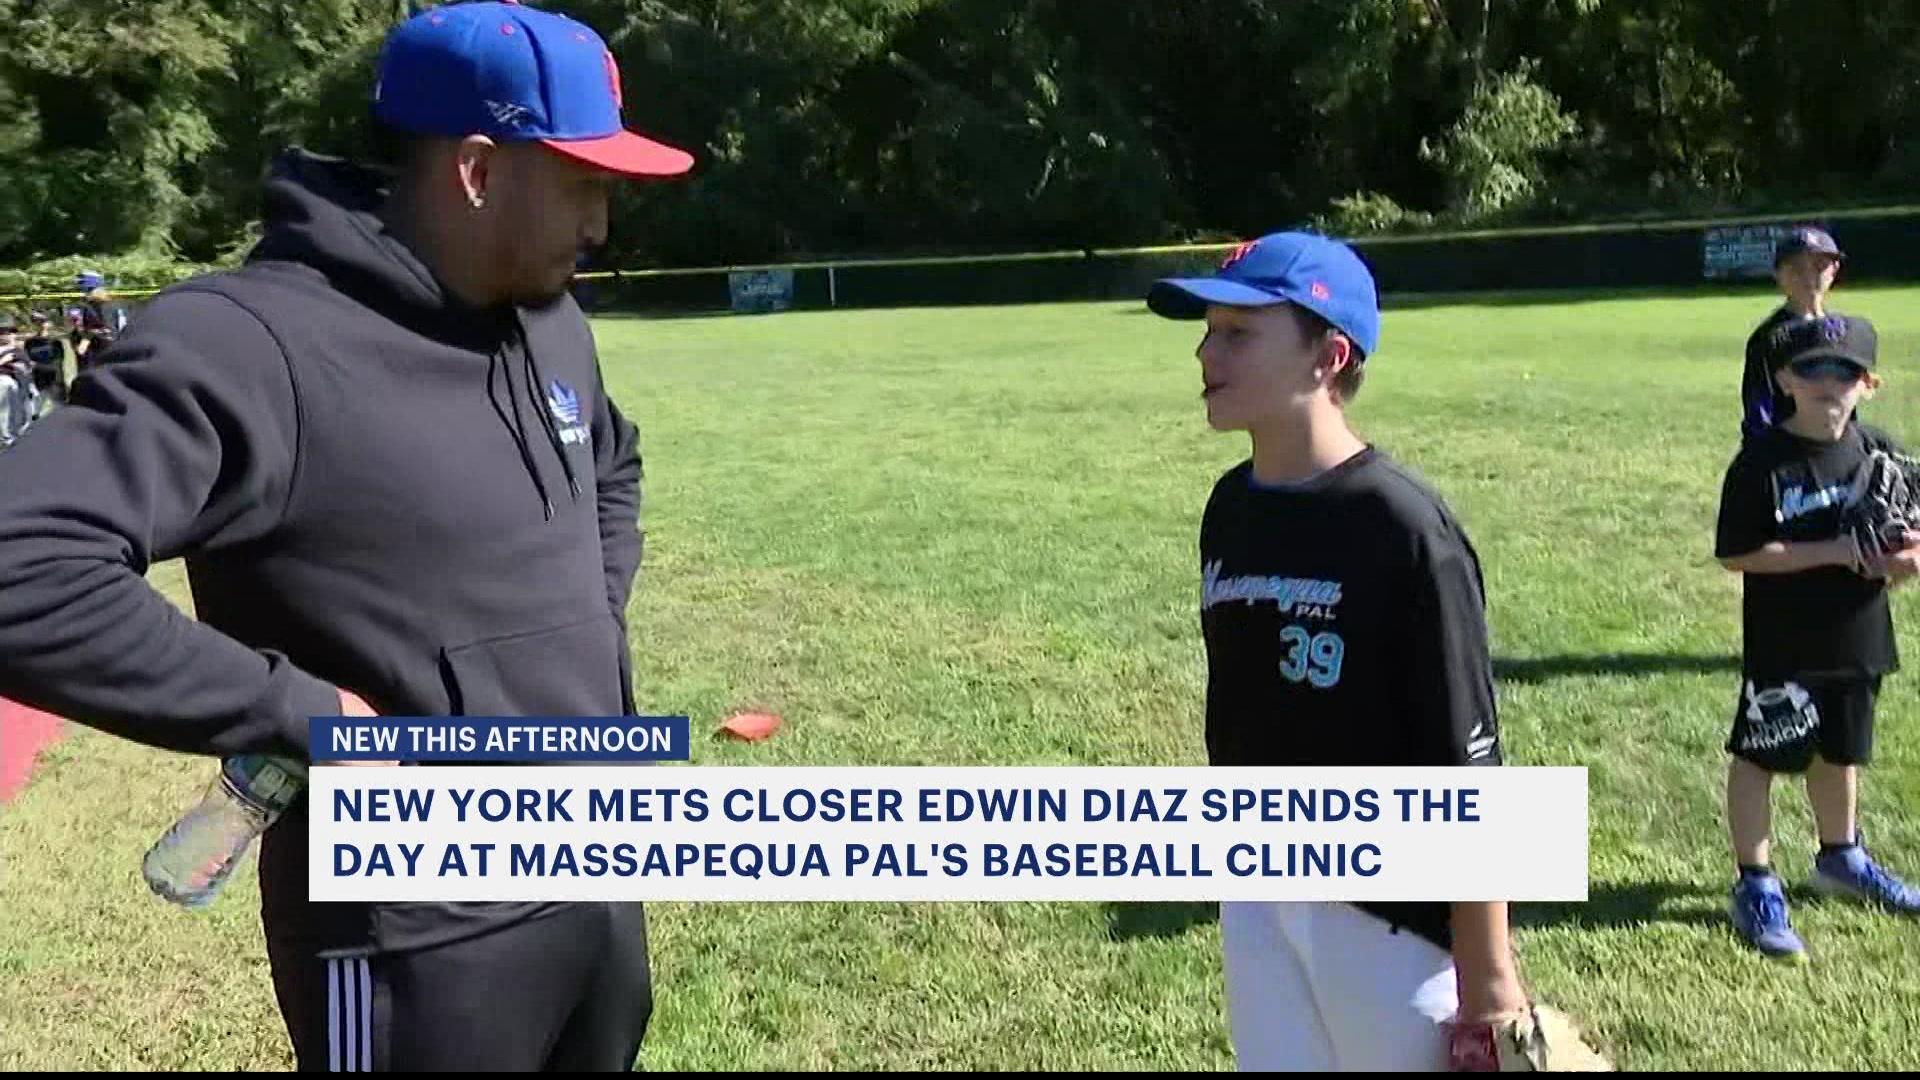 Mets' closer Edwin Diaz teaches kids at Massapequa baseball clinic